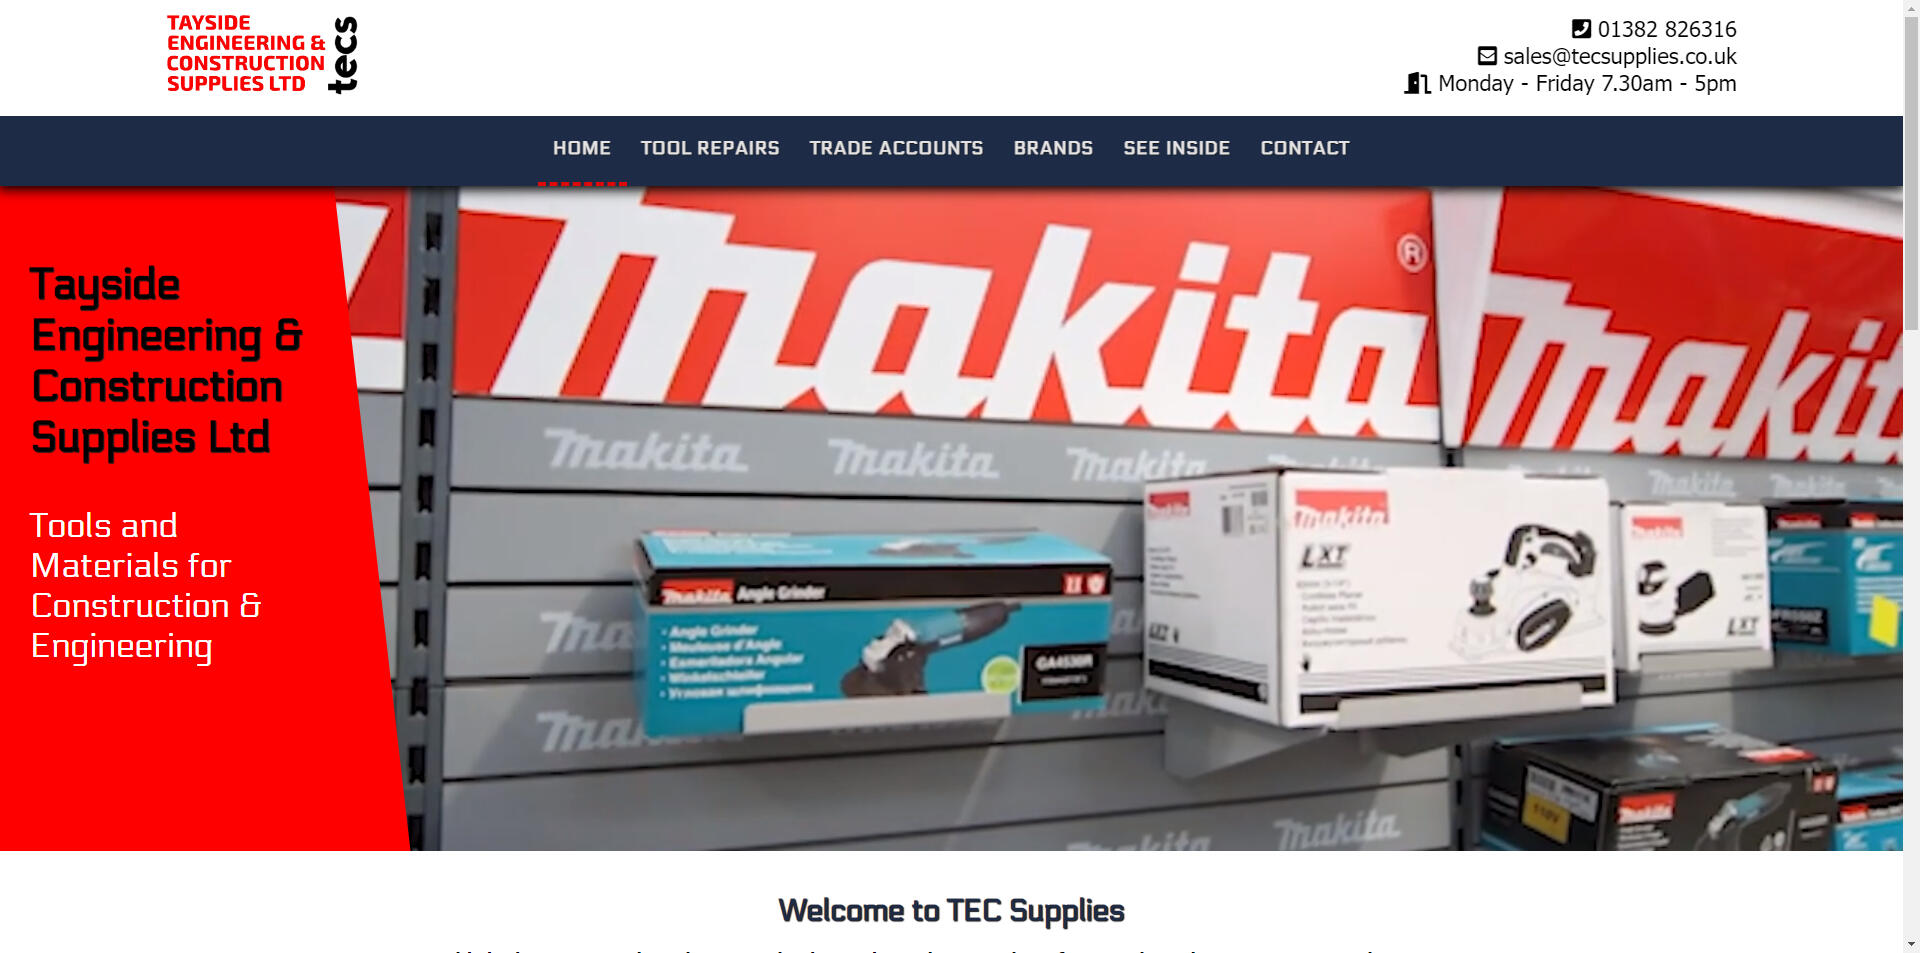 website designed for Tec Supplies